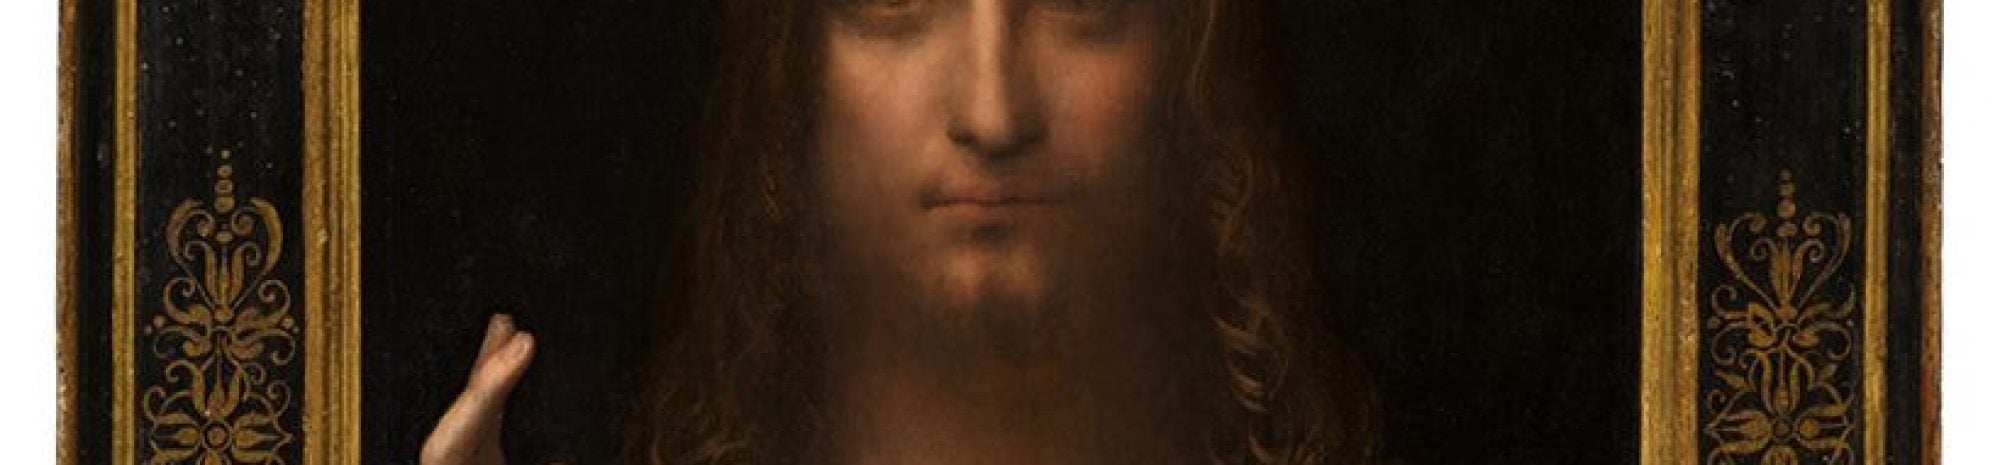 La dernière peinture de Léonard De Vinci va être mise aux enchères pour 100 millions de dollars US